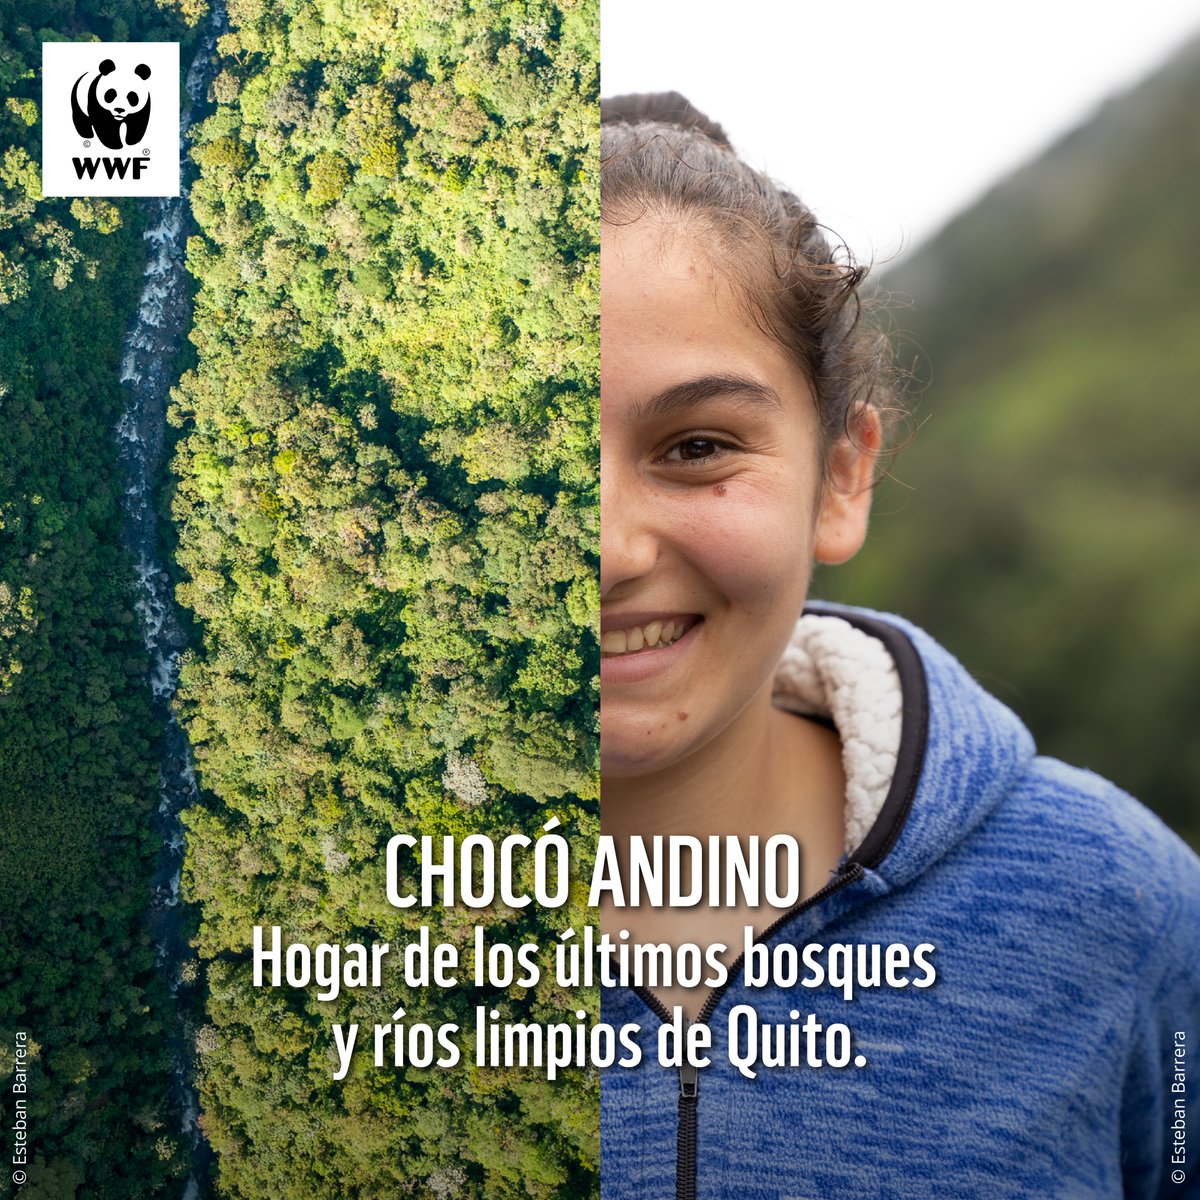 Con 287.000 hectáreas de bosque, el #ChocóAndino es el hogar del oso de anteojos y otras 30 especies de fauna silvestre, además de aproximadamente 1 960 especies de plantas. 
¡Desde WWF apoyamos su conservación a largo plazo! Lee nuestra postura completa: bit.ly/3Ox2Afe